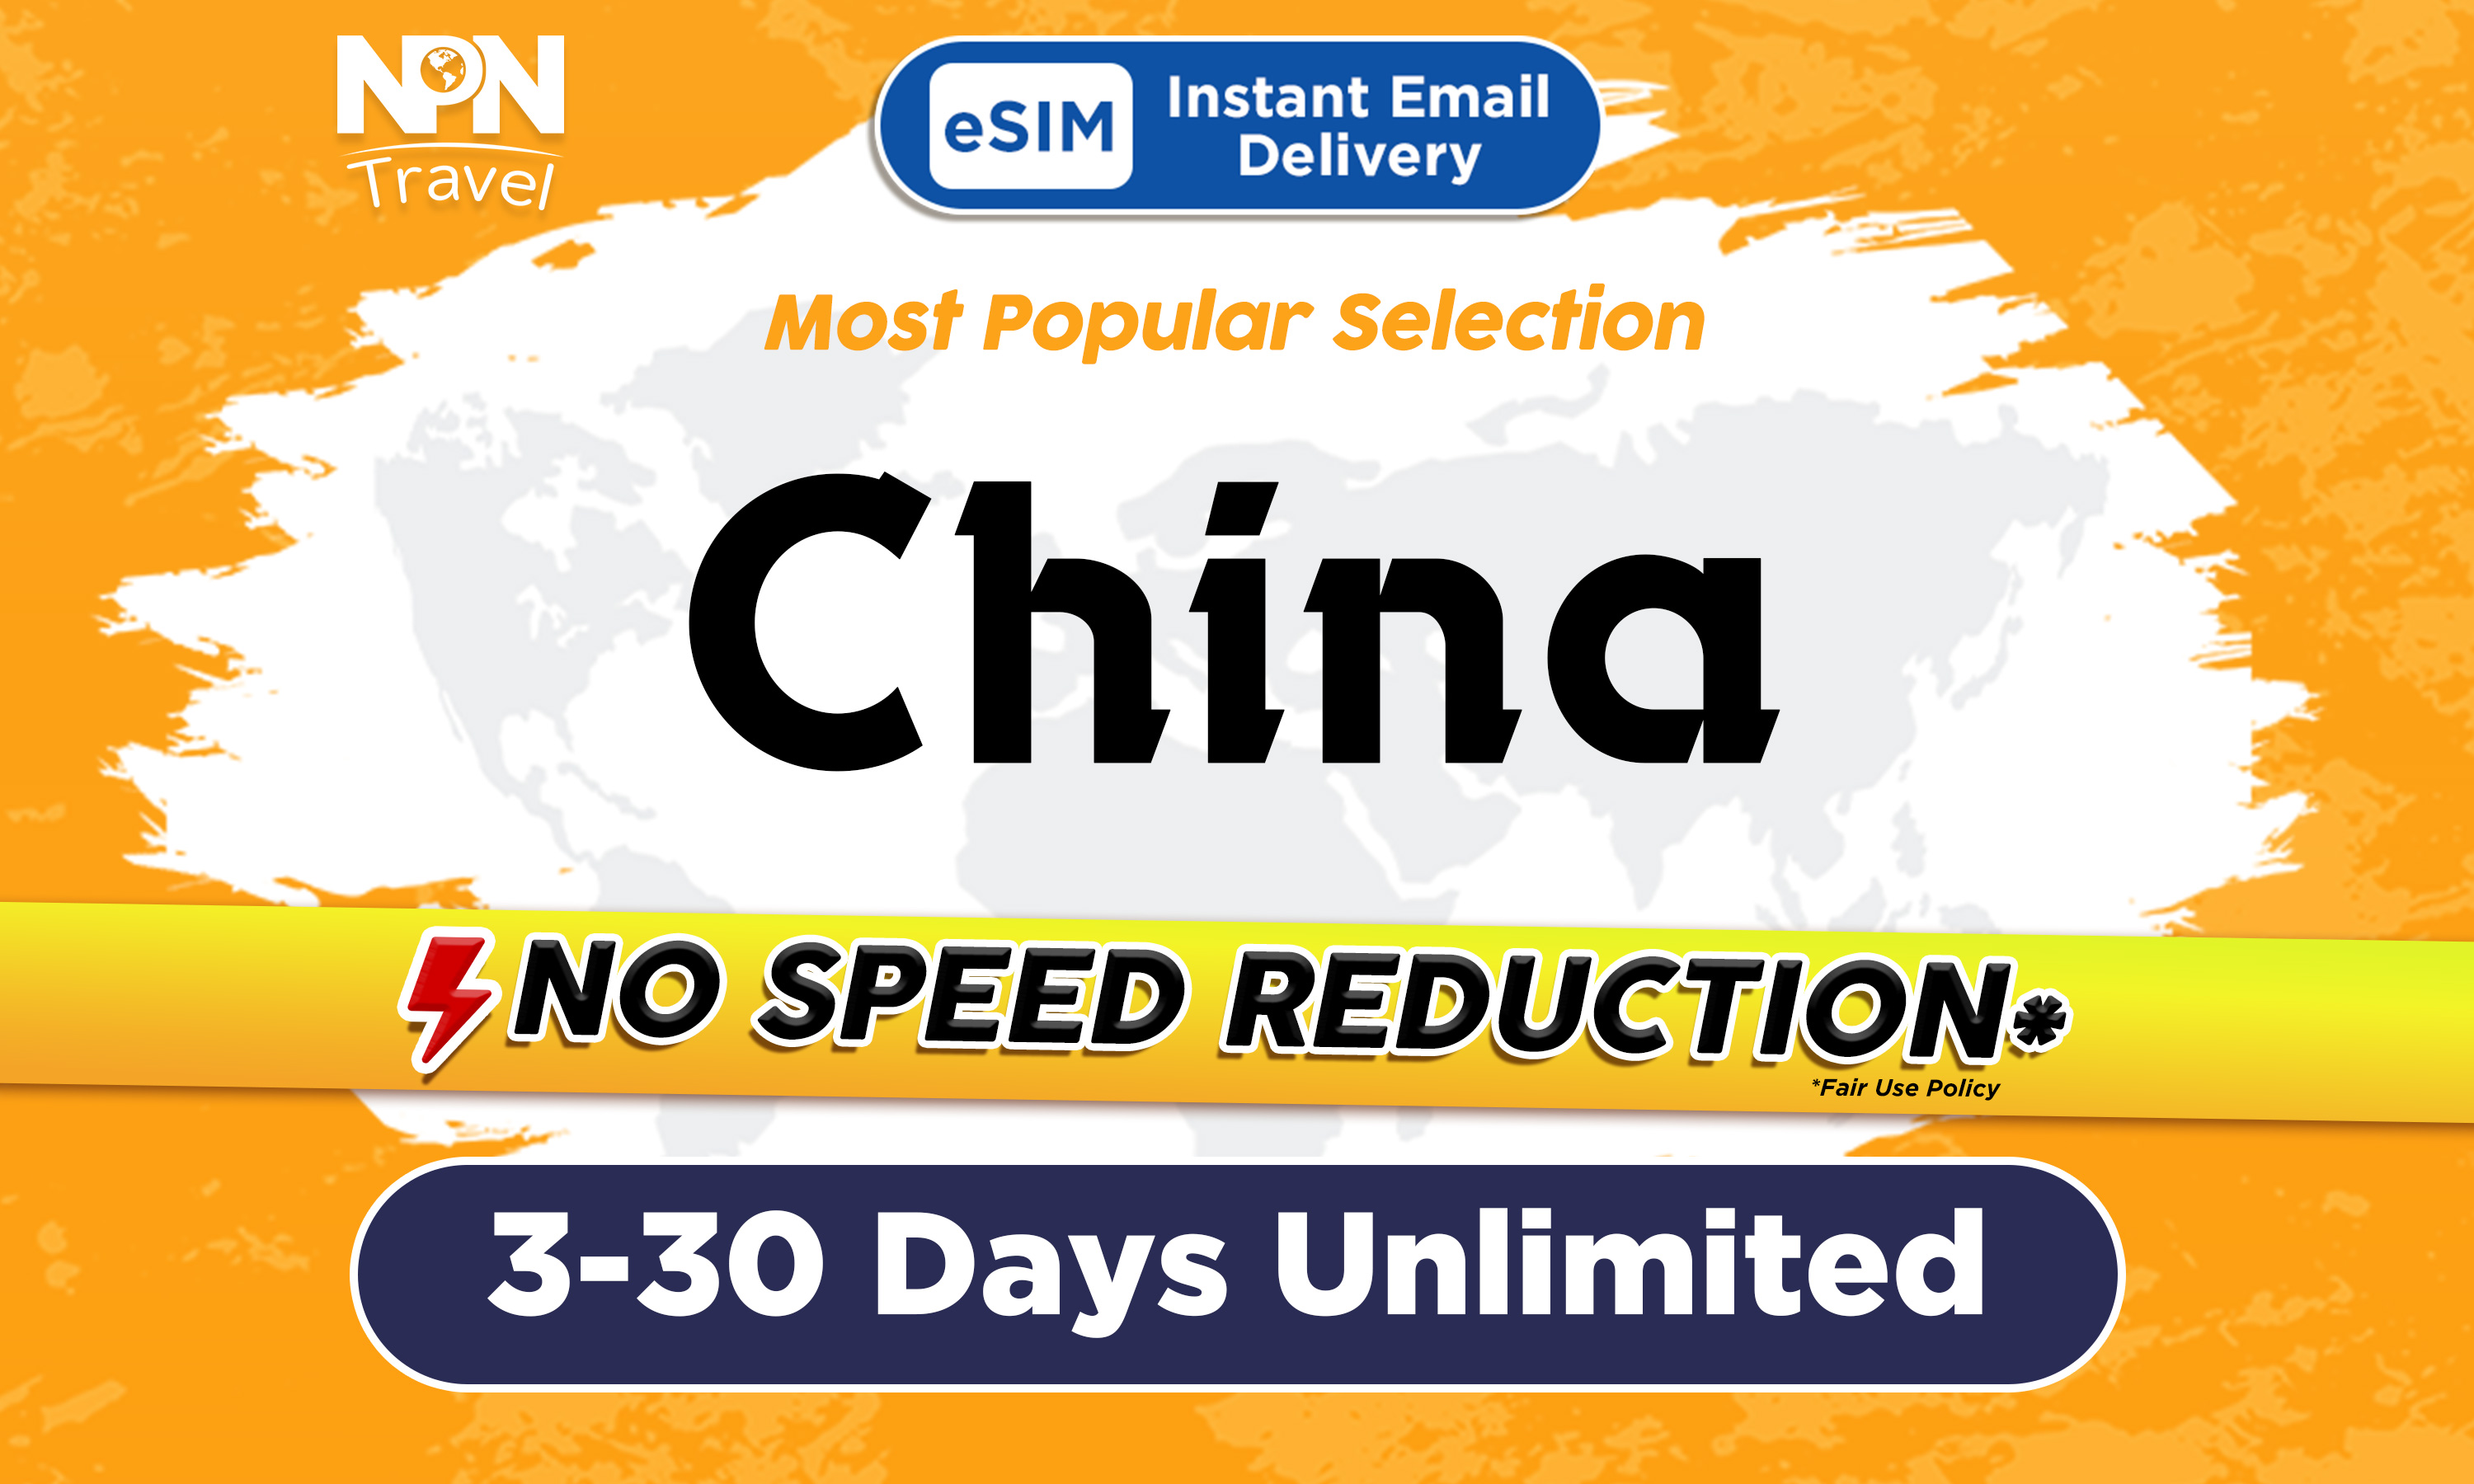 中國內地5 - 15天無限流量4G eSIM上網卡（500MB / 1GB / 2GB）